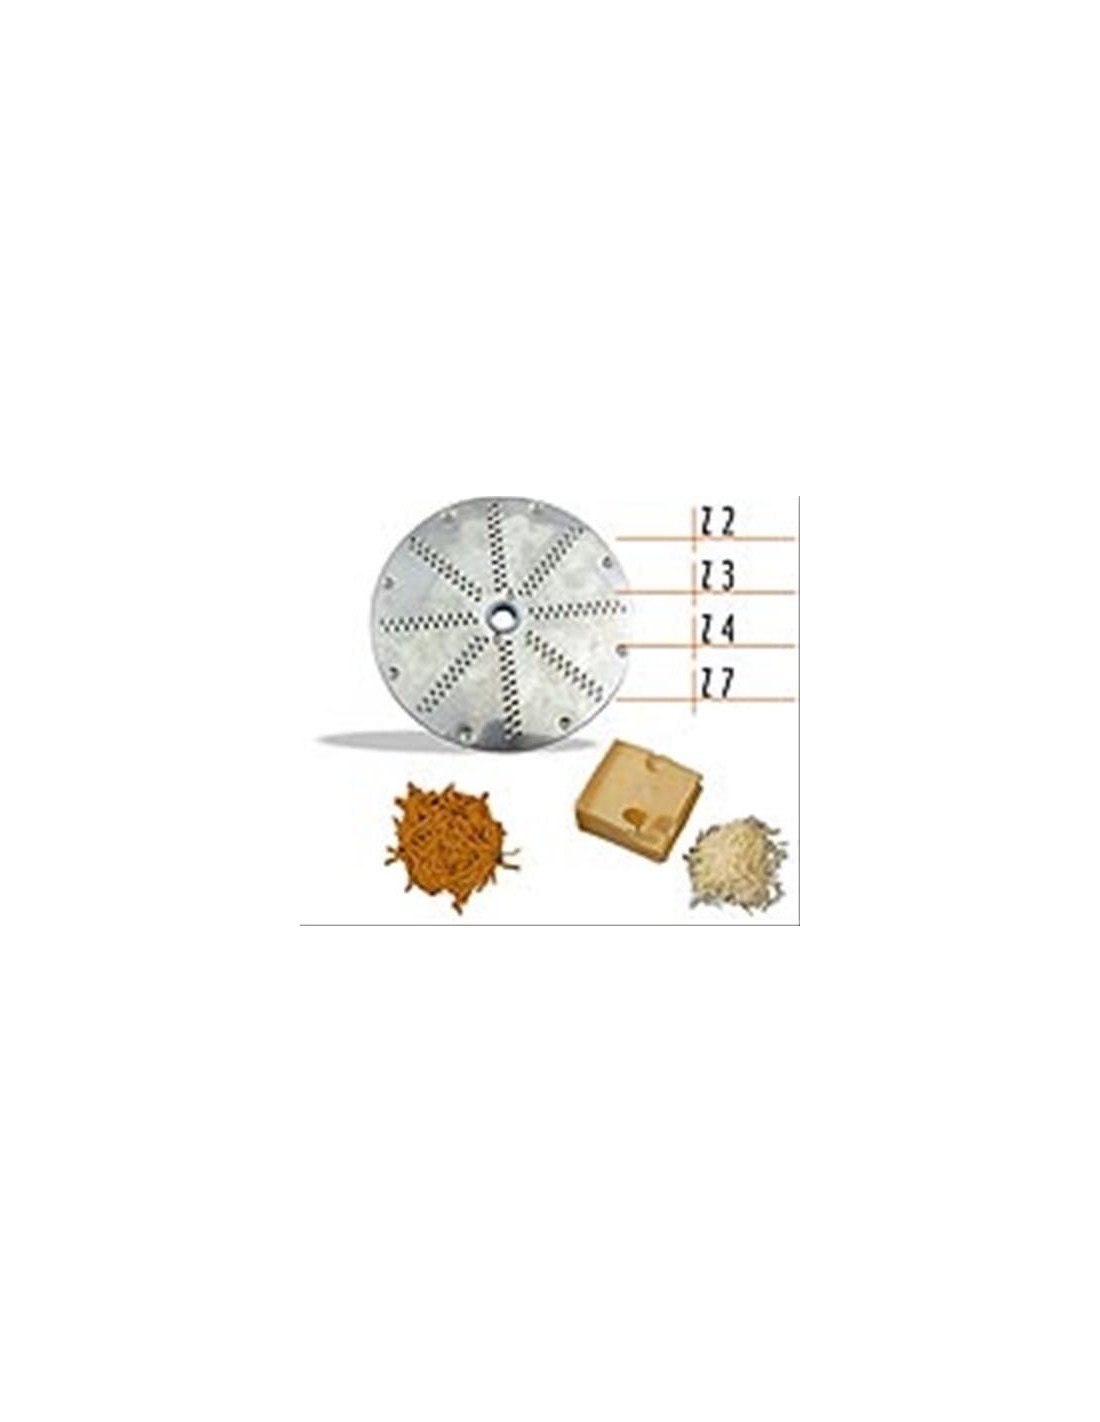 Disc cutter - For TAGLIUZZARE and SFILACCIARE - Cutting thickness mm 3